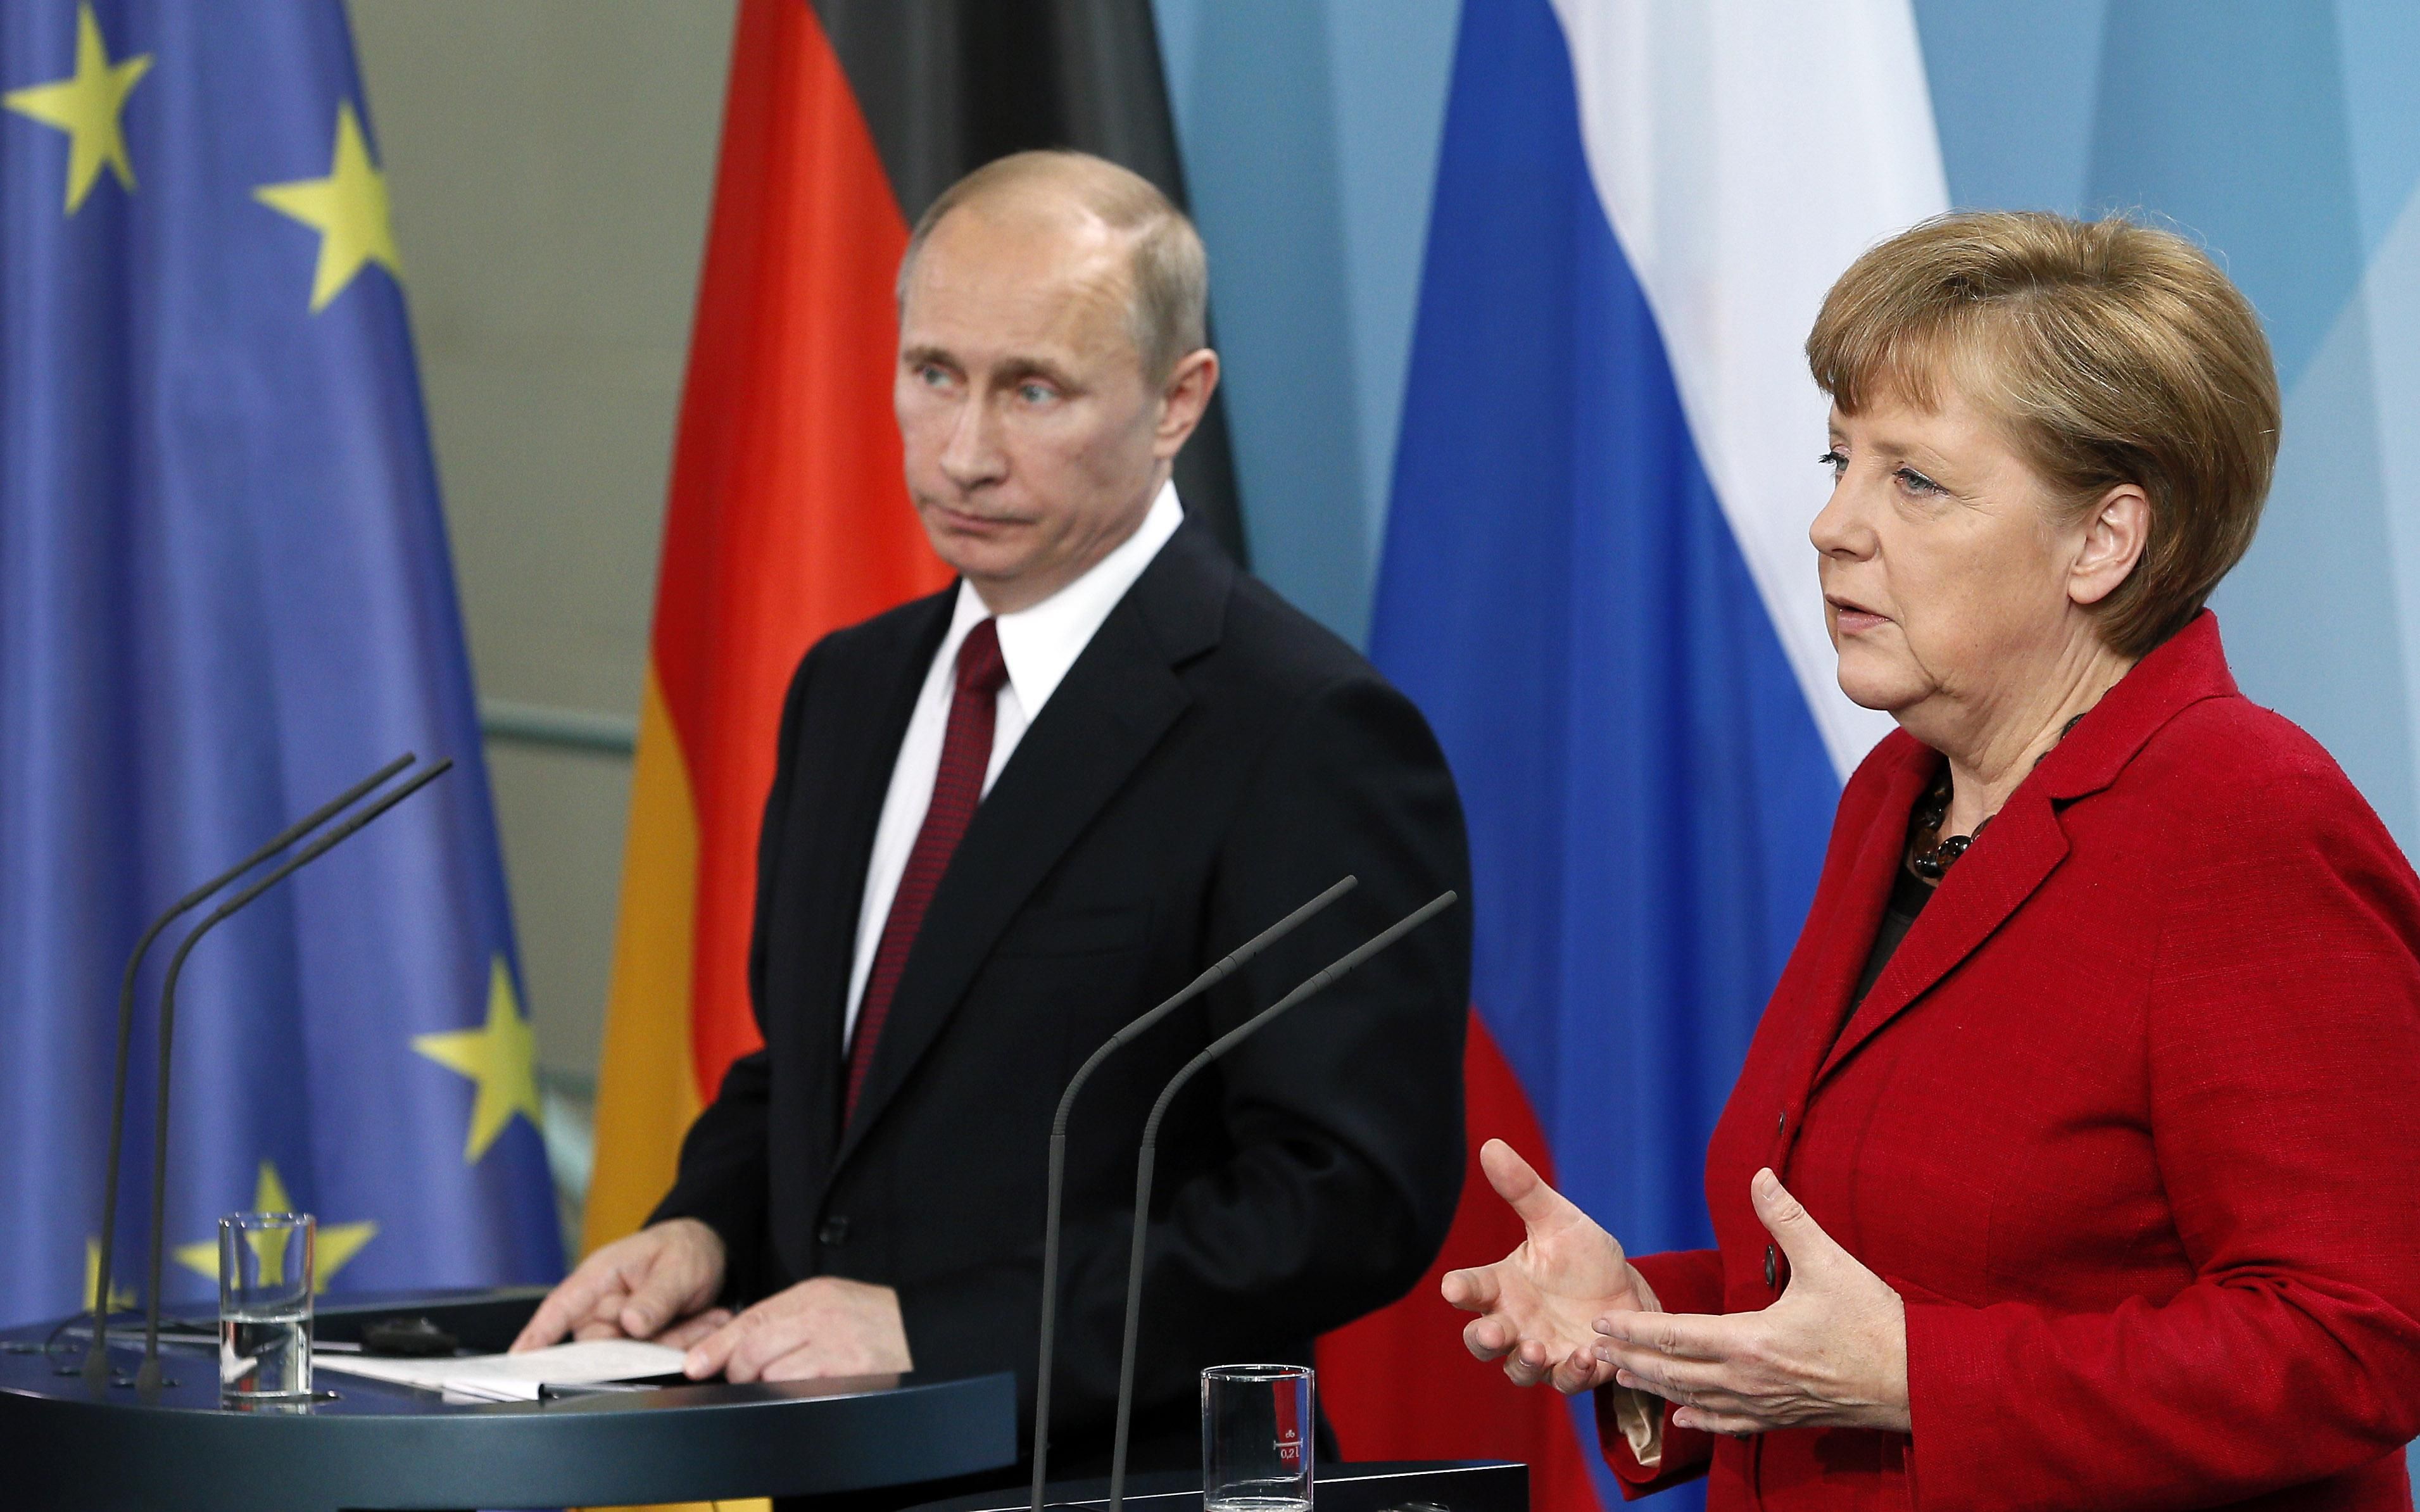 Результат поездки Меркель к Путину разочаровывает, – Der Spiegel